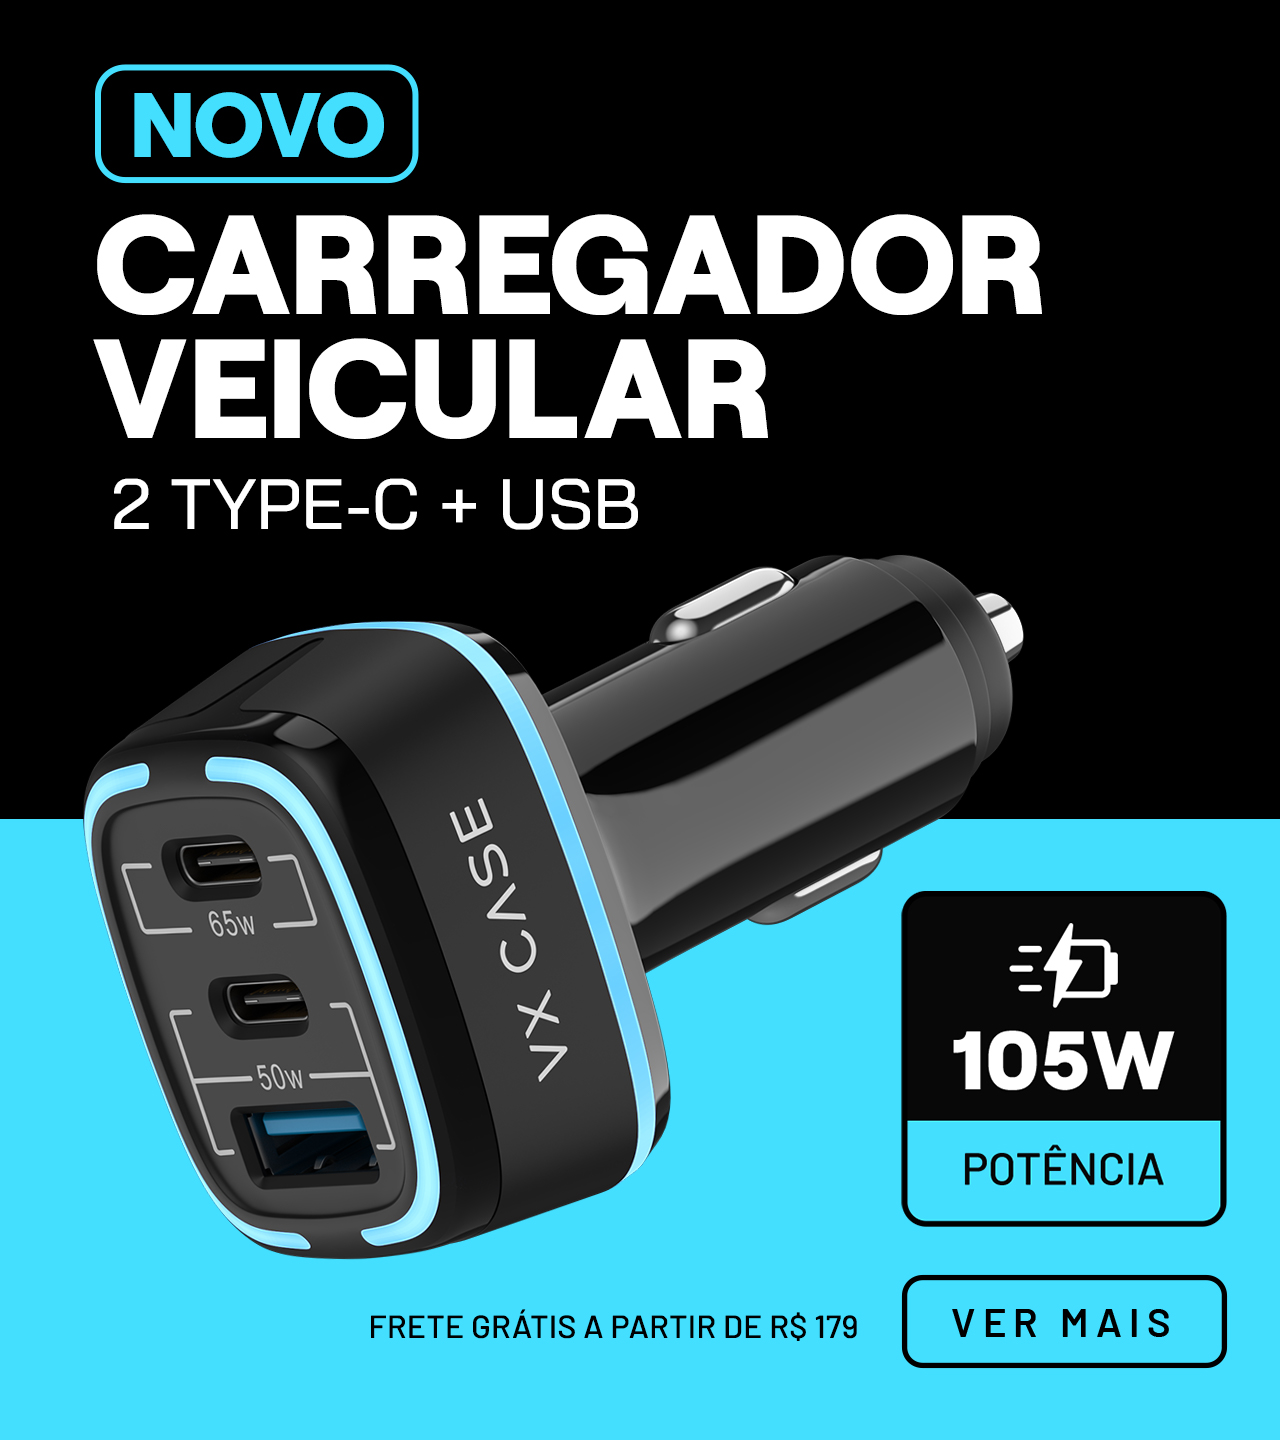 Lançamento Carregador Veicular 105w vxcase - carregador mais potente do mercado